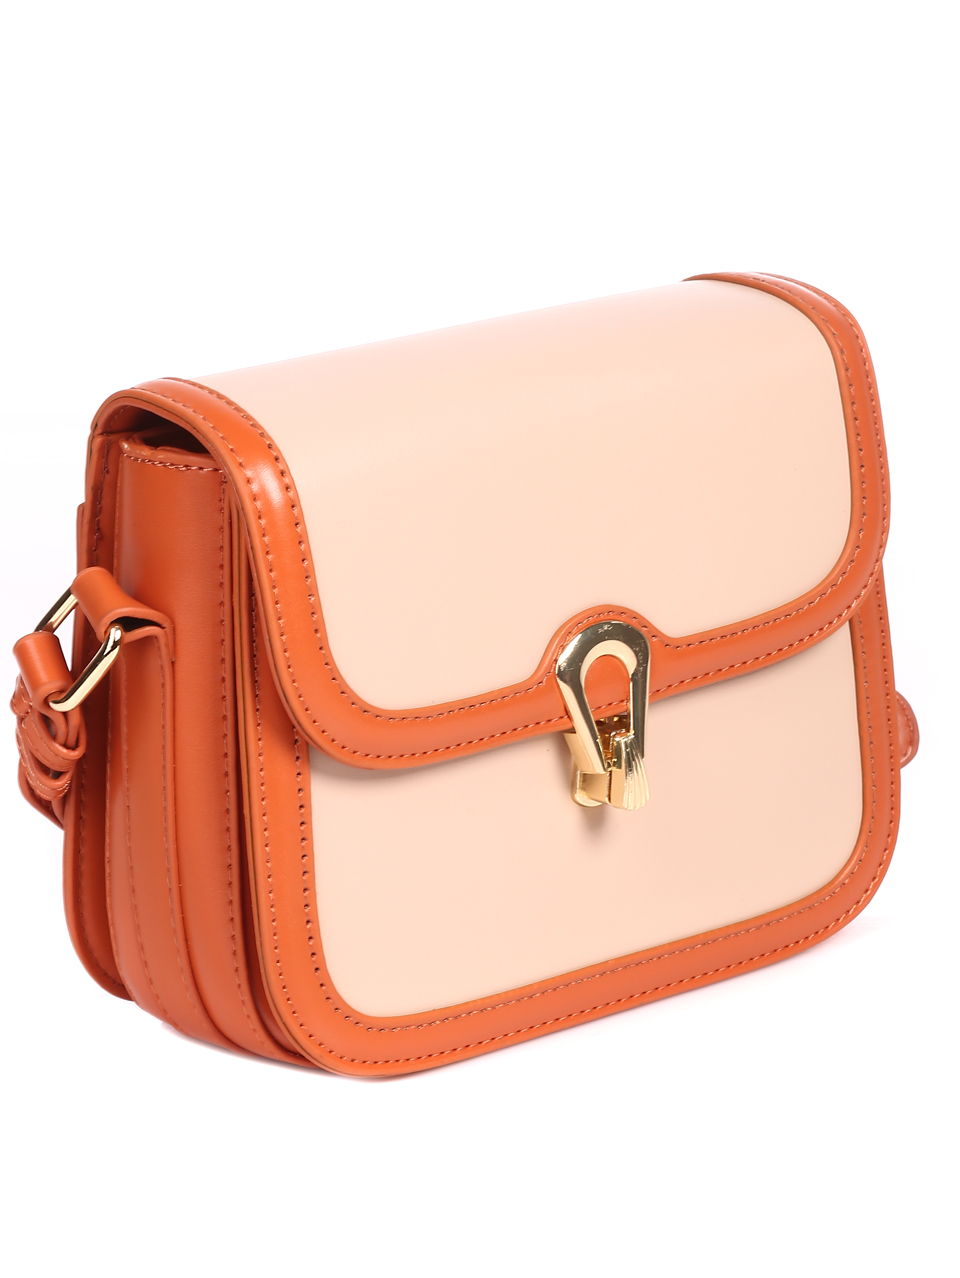 Ежедневна дамска чанта в оранжево 8016 orange